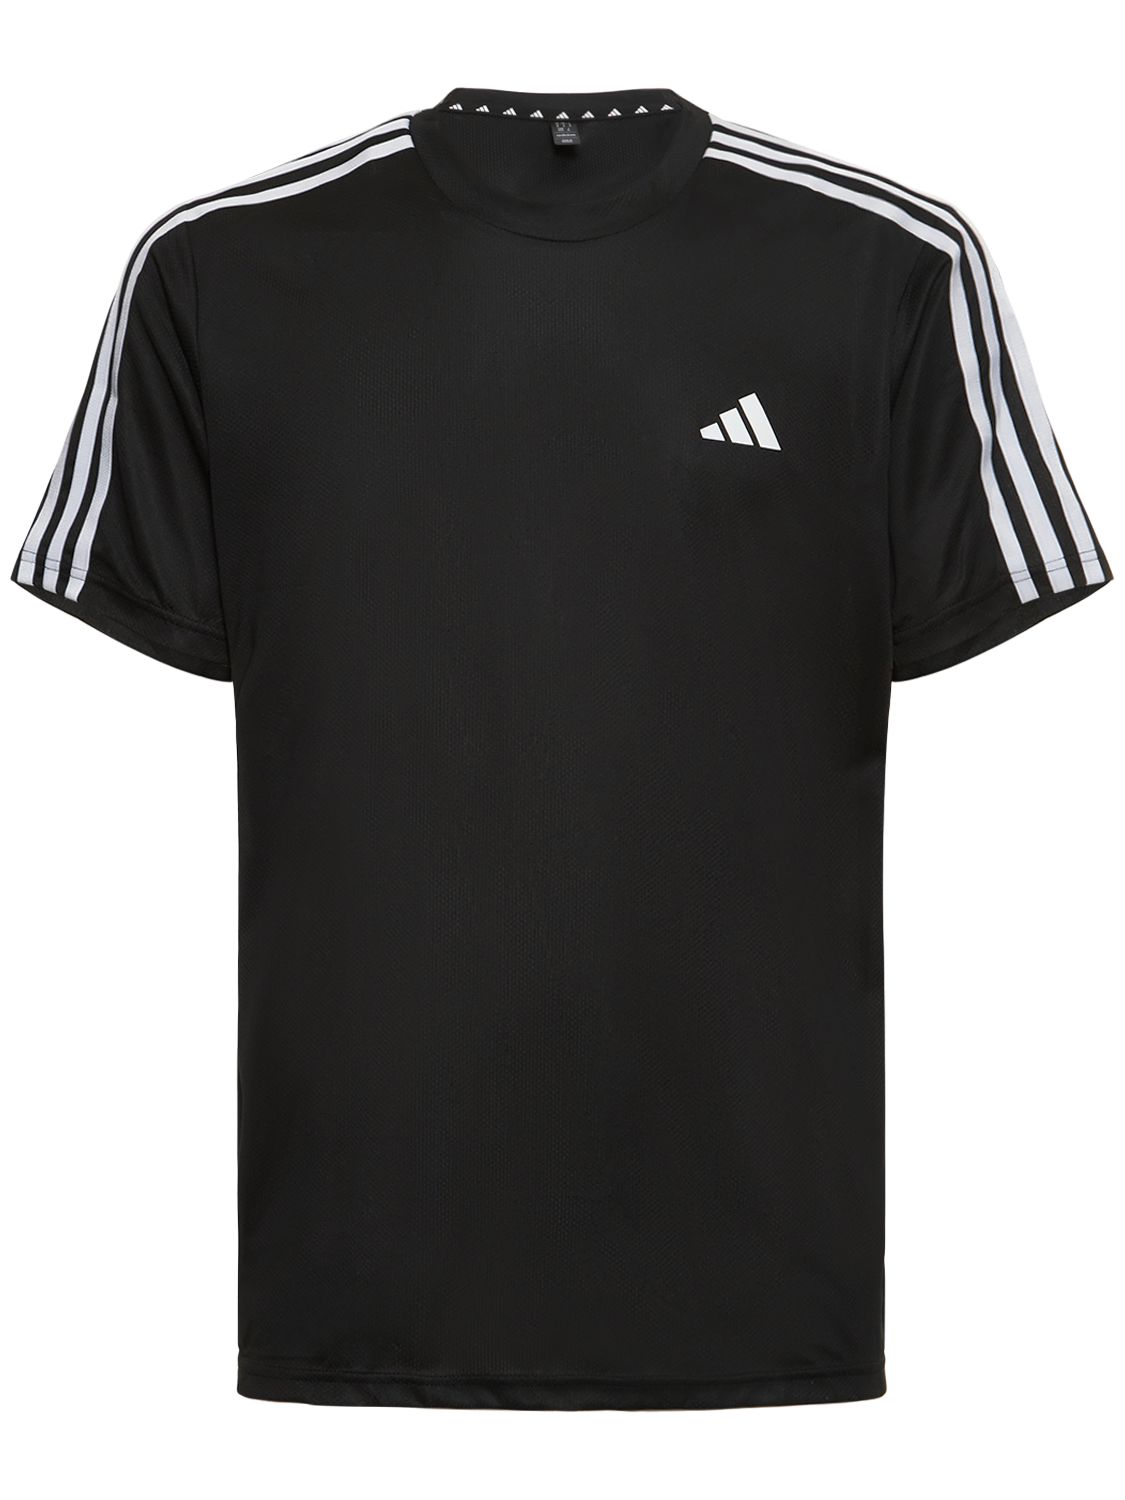 Adidas Originals 三条纹t恤 In Black